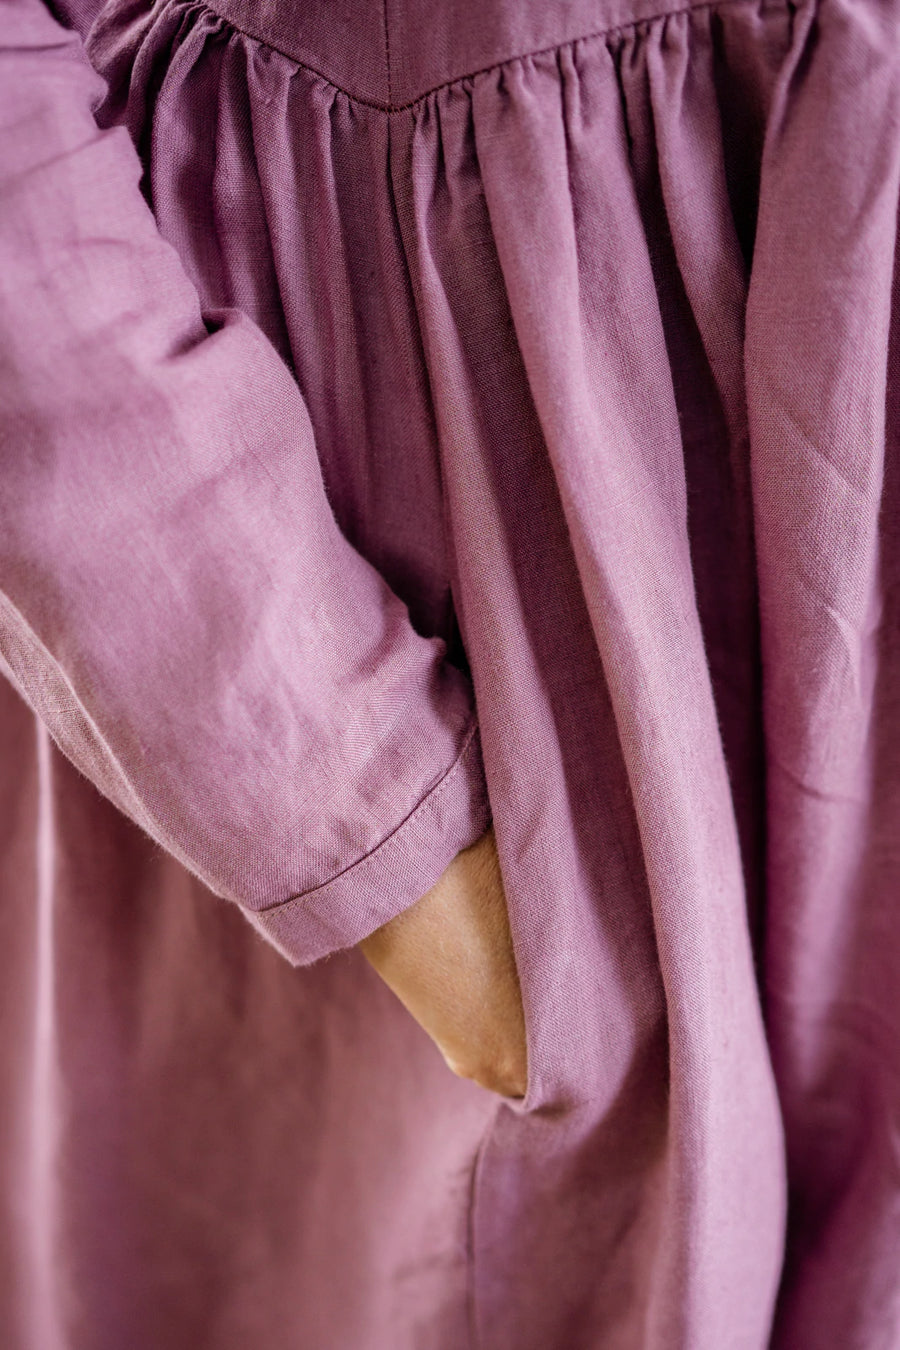 son de flor malala dress long sleeves phlox purple